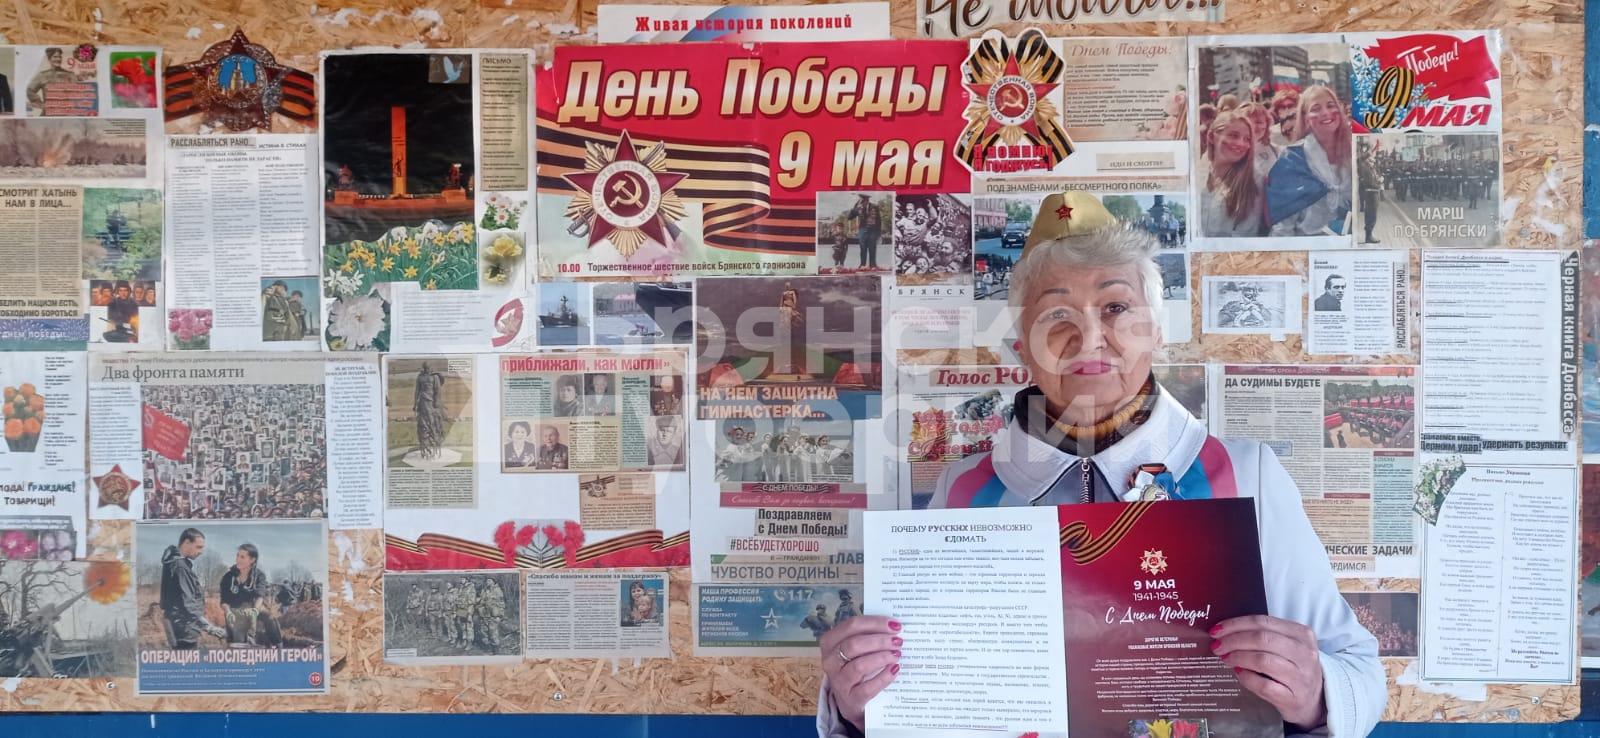 В 10-м микрорайоне Брянска пенсионерка превратила остановку в информационный уголок